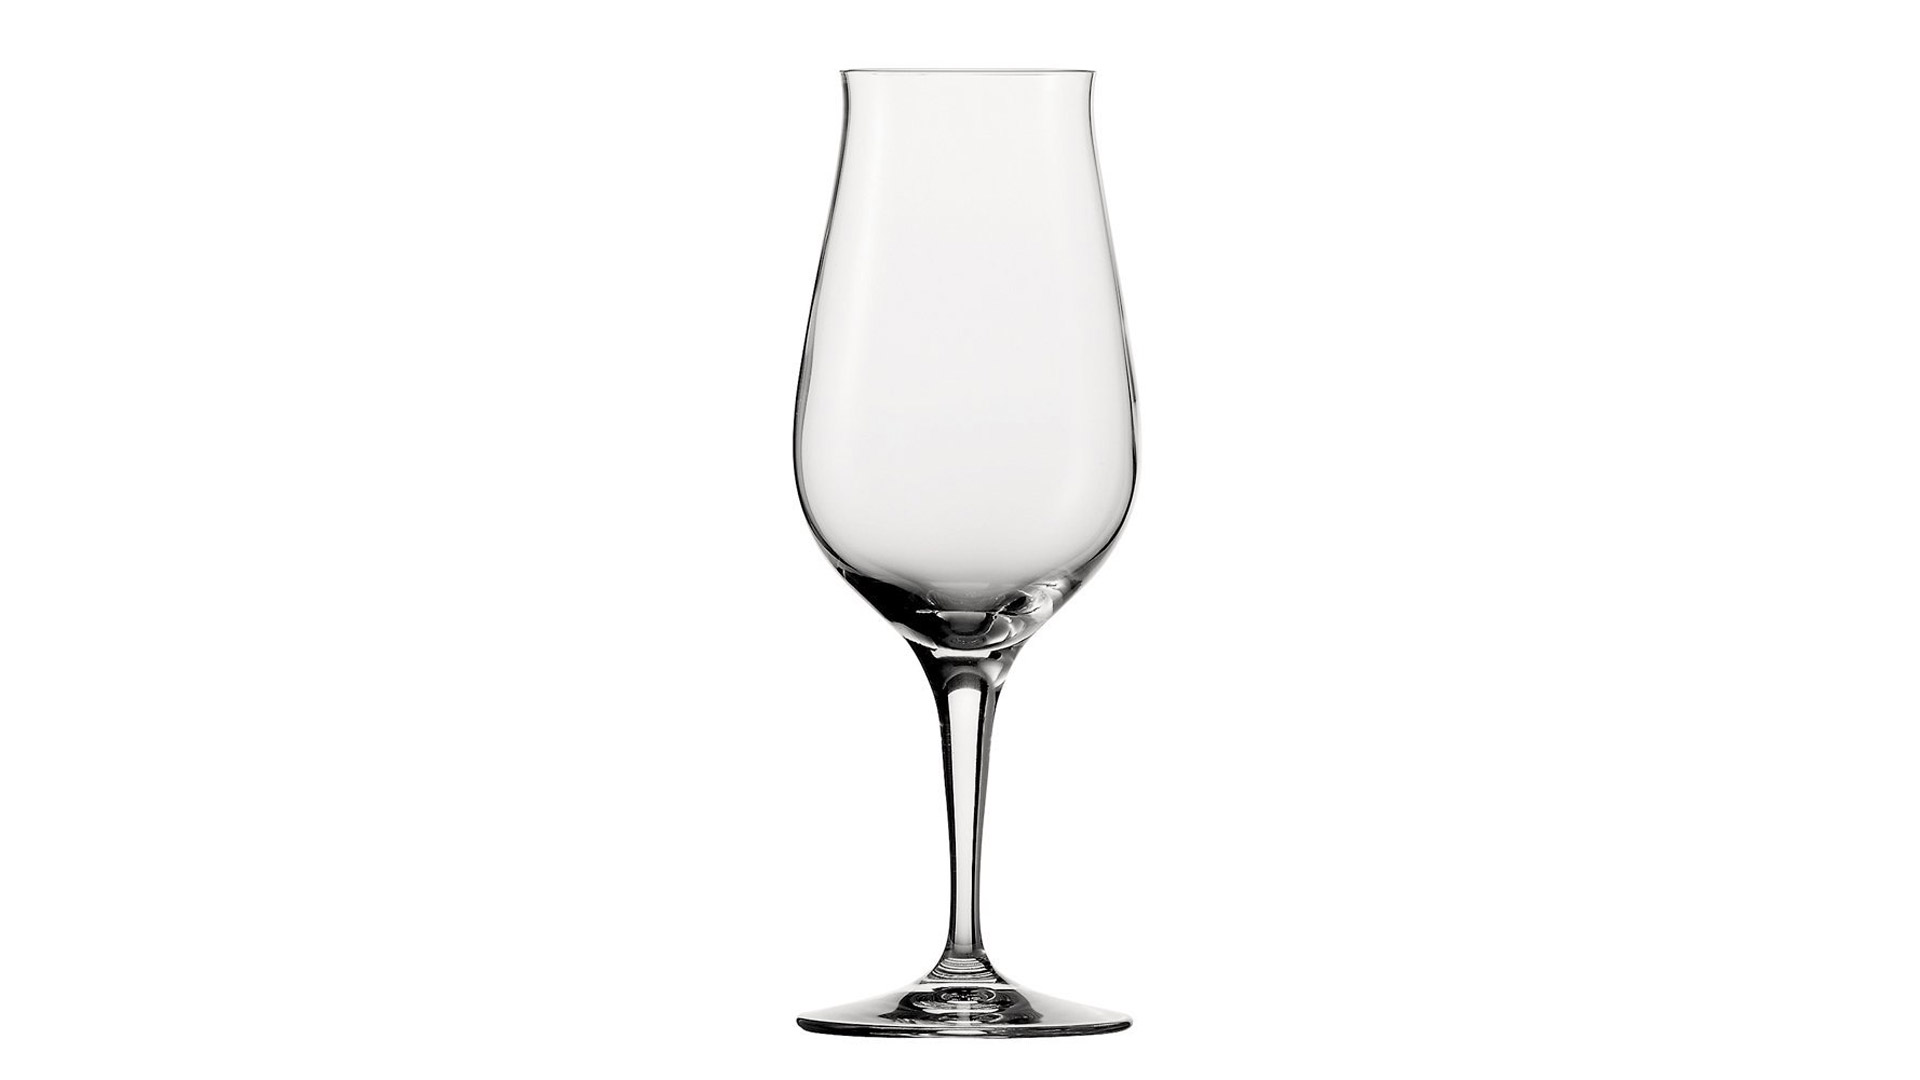 Black & White Glas Whisky Whiskey Gläser aus Gaststätte Bar Whiskeyglas selten 